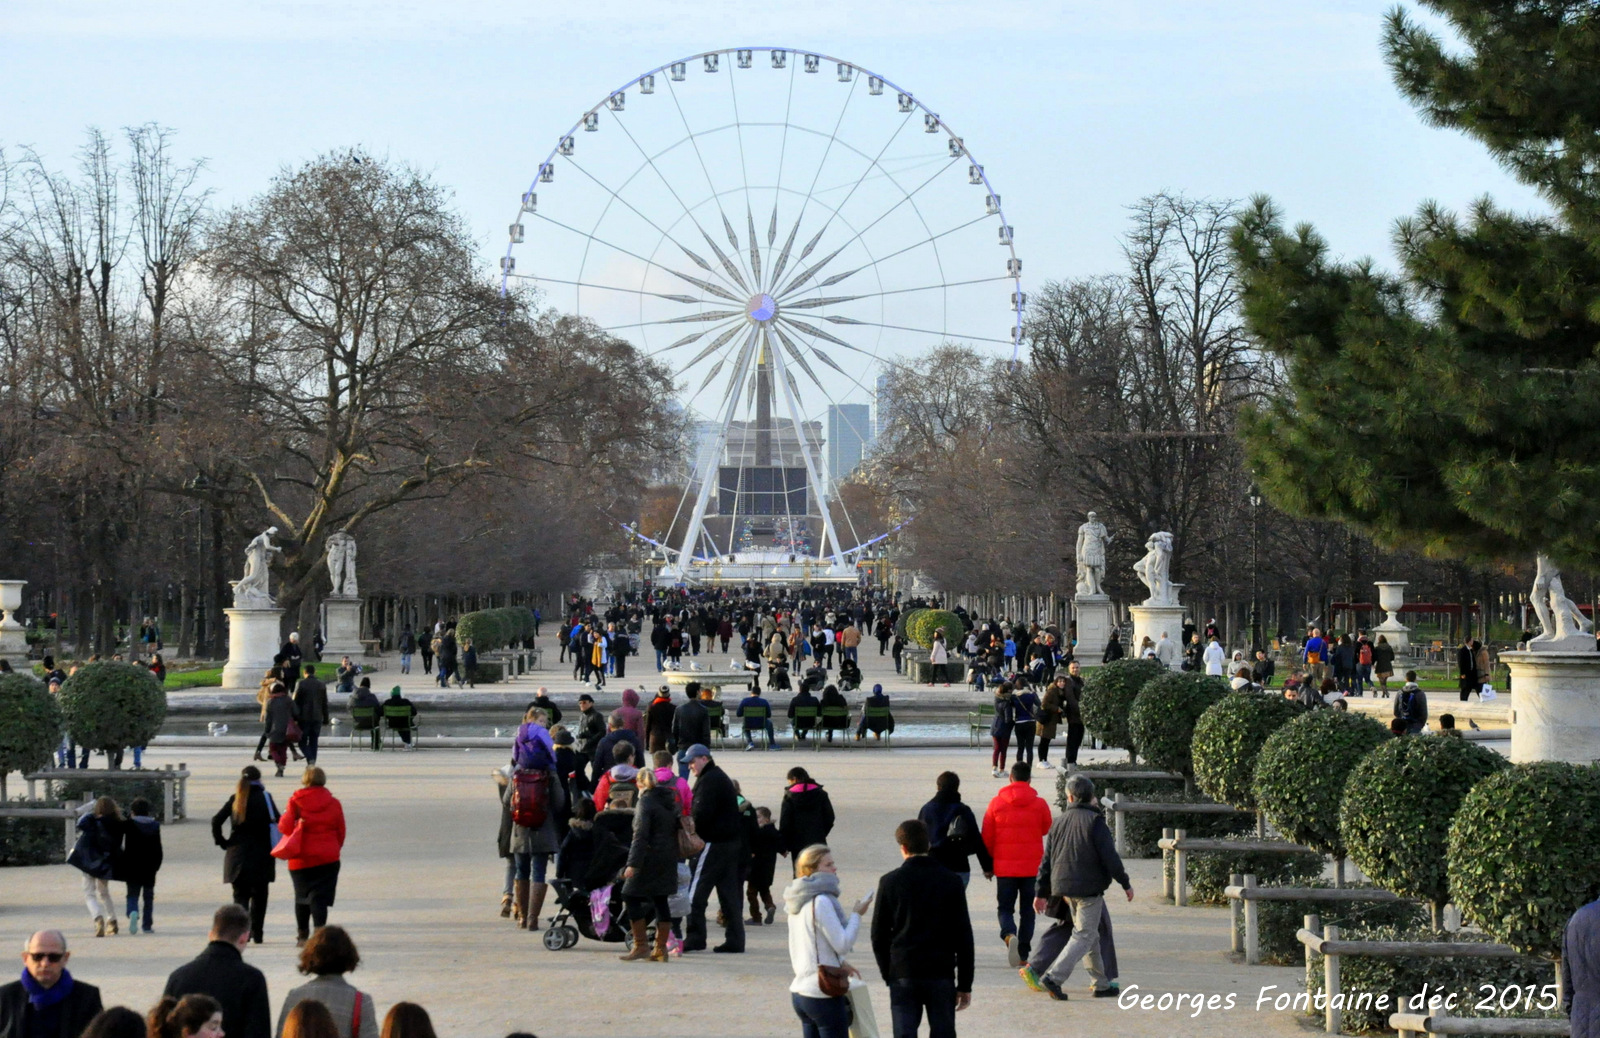 RÃ©sultat de recherche d'images pour "Grande roue du Jardin des Tuileries"